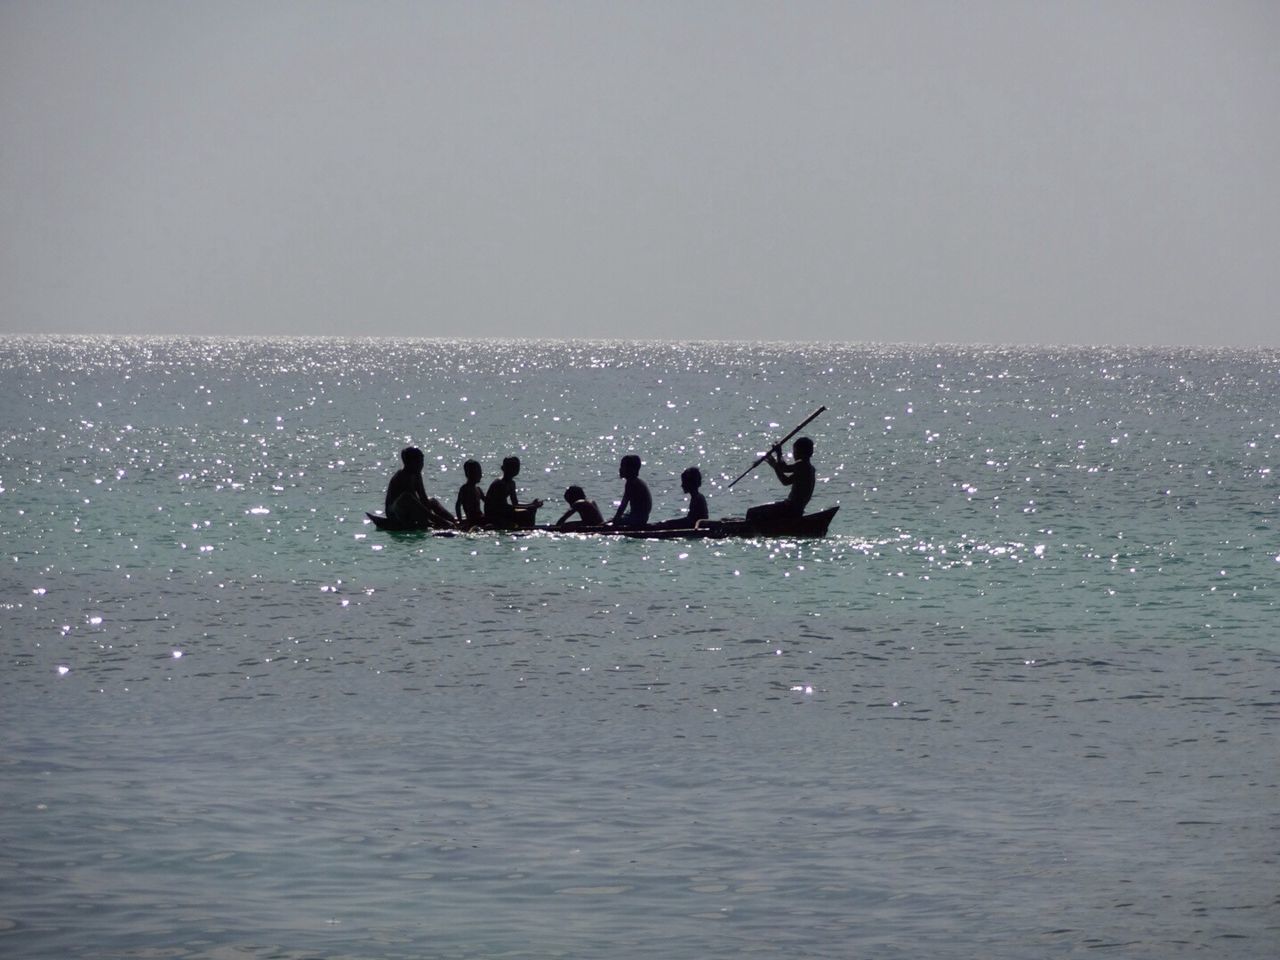 Family in canoe in sea